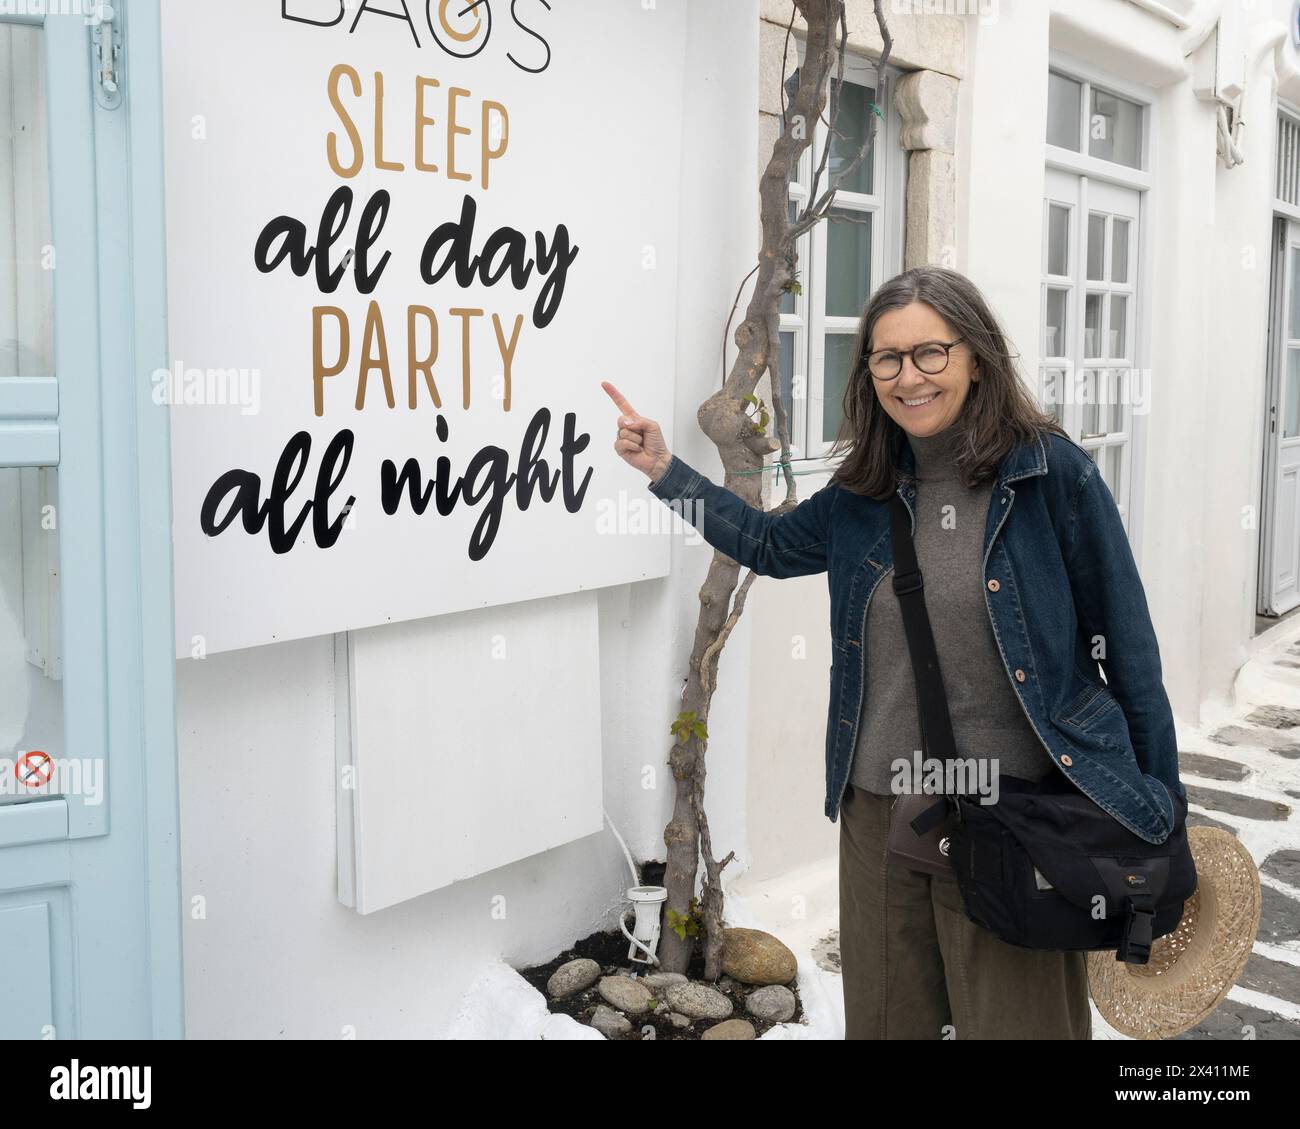 Reife Frau zeigt und lacht über ein jugendliches und sorgloses inspirierendes Schild, auf dem steht "Schlaf den ganzen Tag Party die ganze Nacht", das auf einem weißen Gebäude steht... Stockfoto